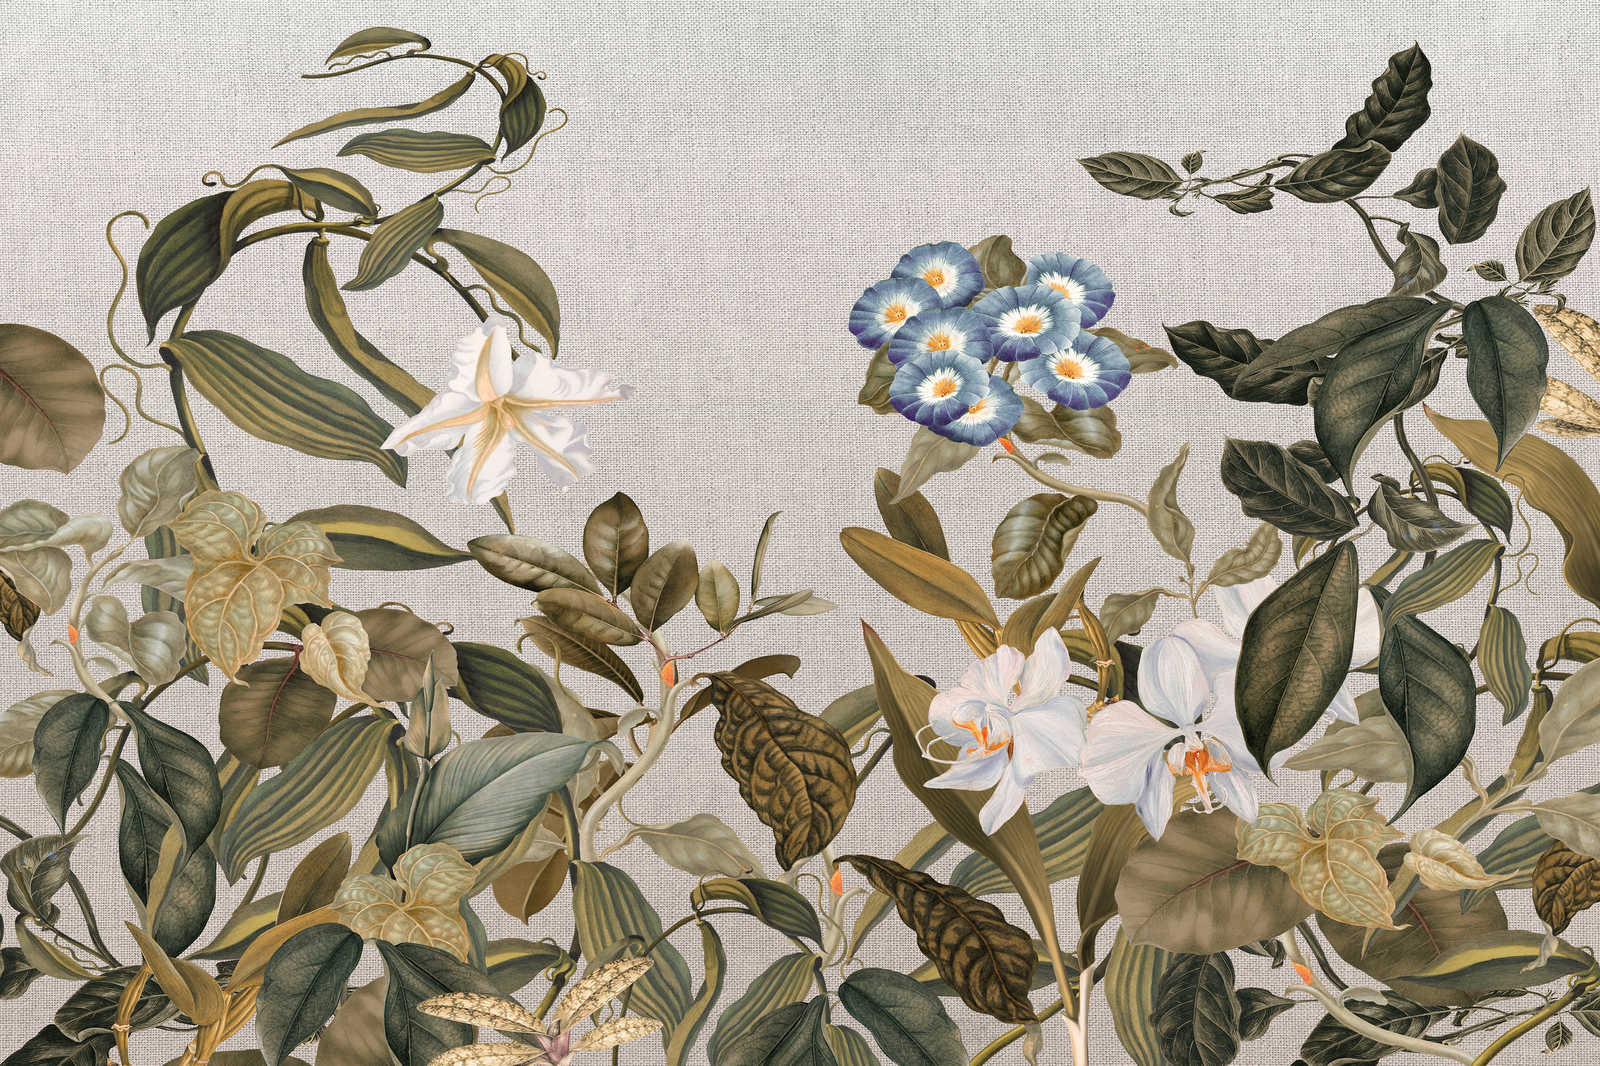             Lienzo estilo botánico Flores, hojas y aspecto textil - 1,20 m x 0,80 m
        